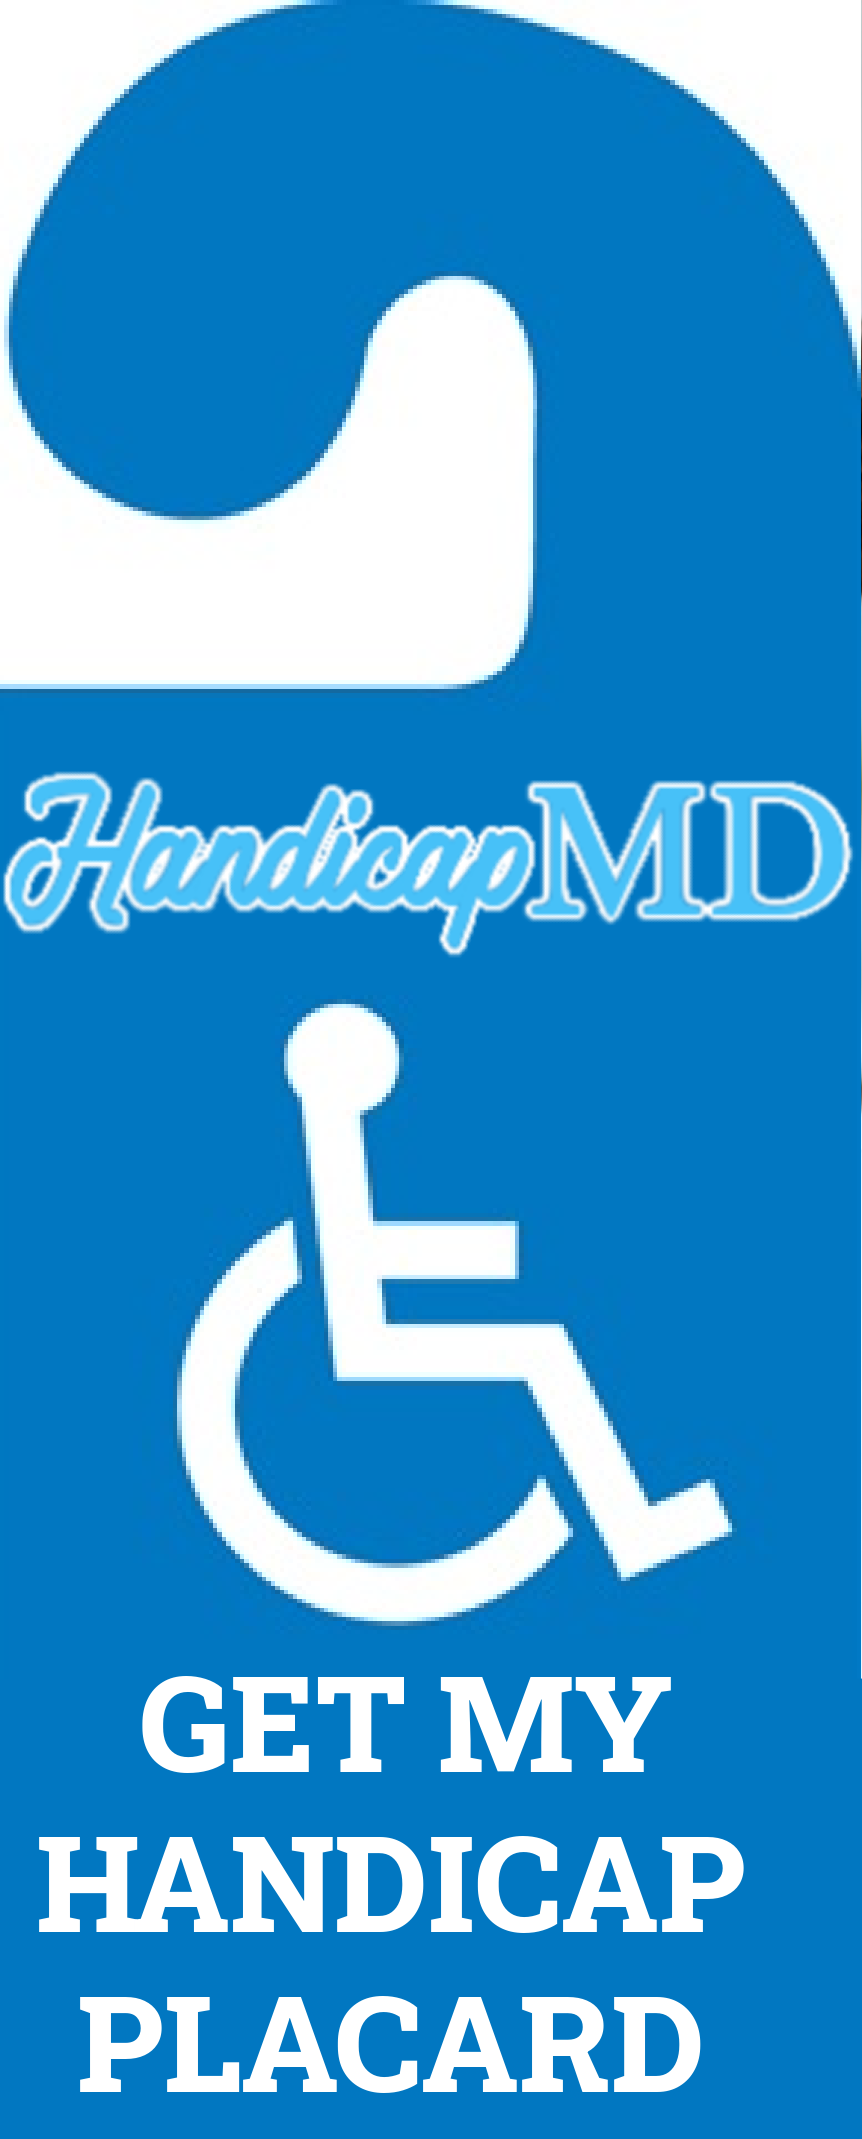 DMV Handicap Parking Placard In Accomac Online HandicapMD